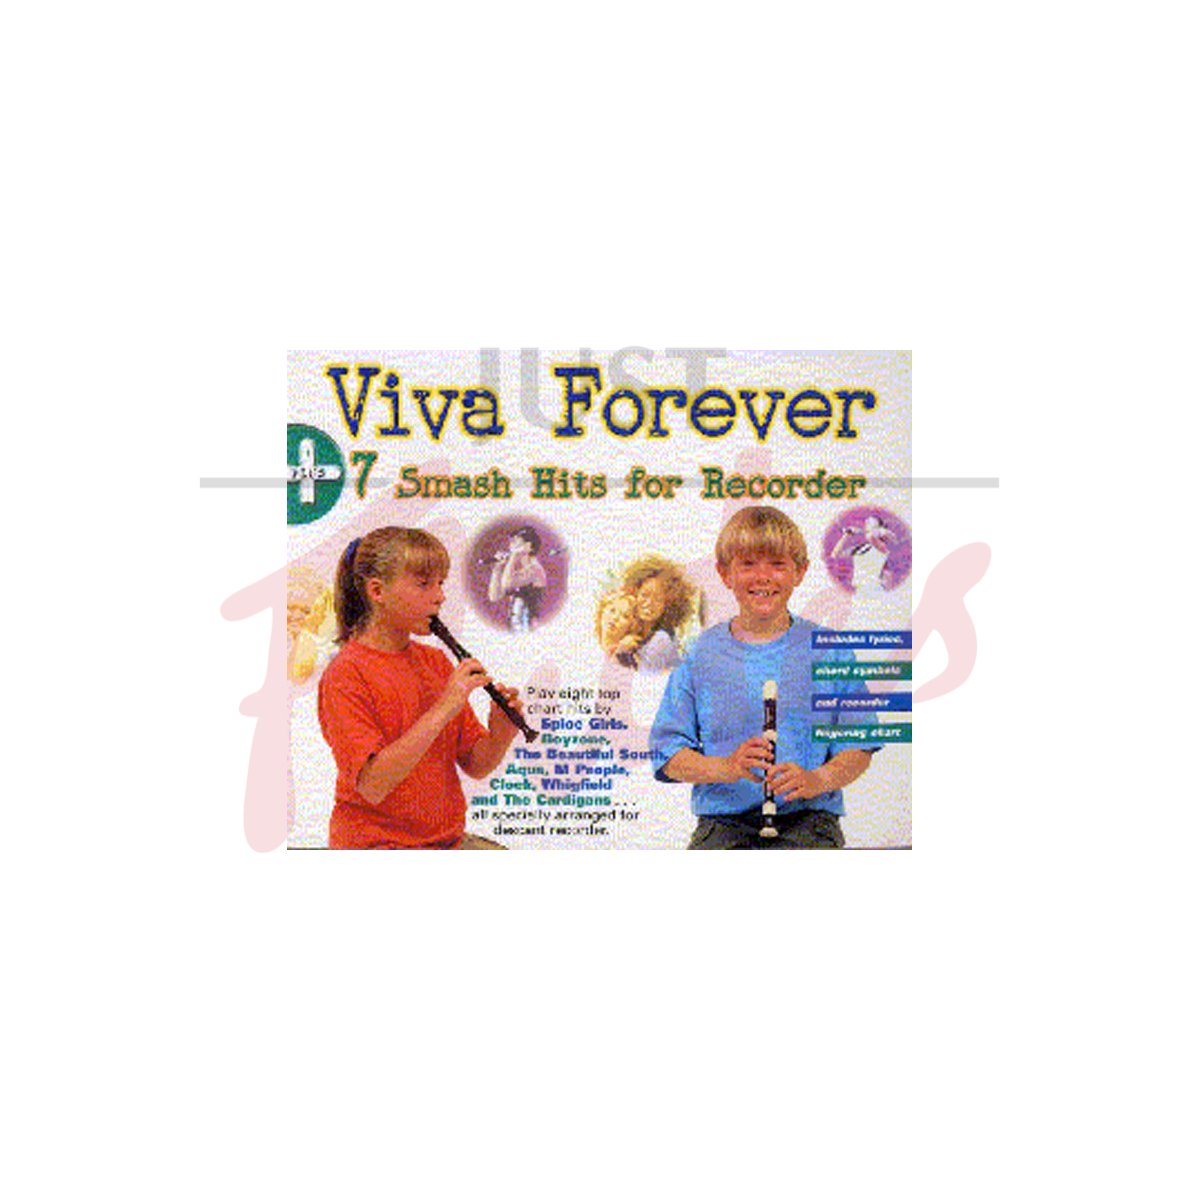 Viva Forever + 7 Smash Hits for Recorder